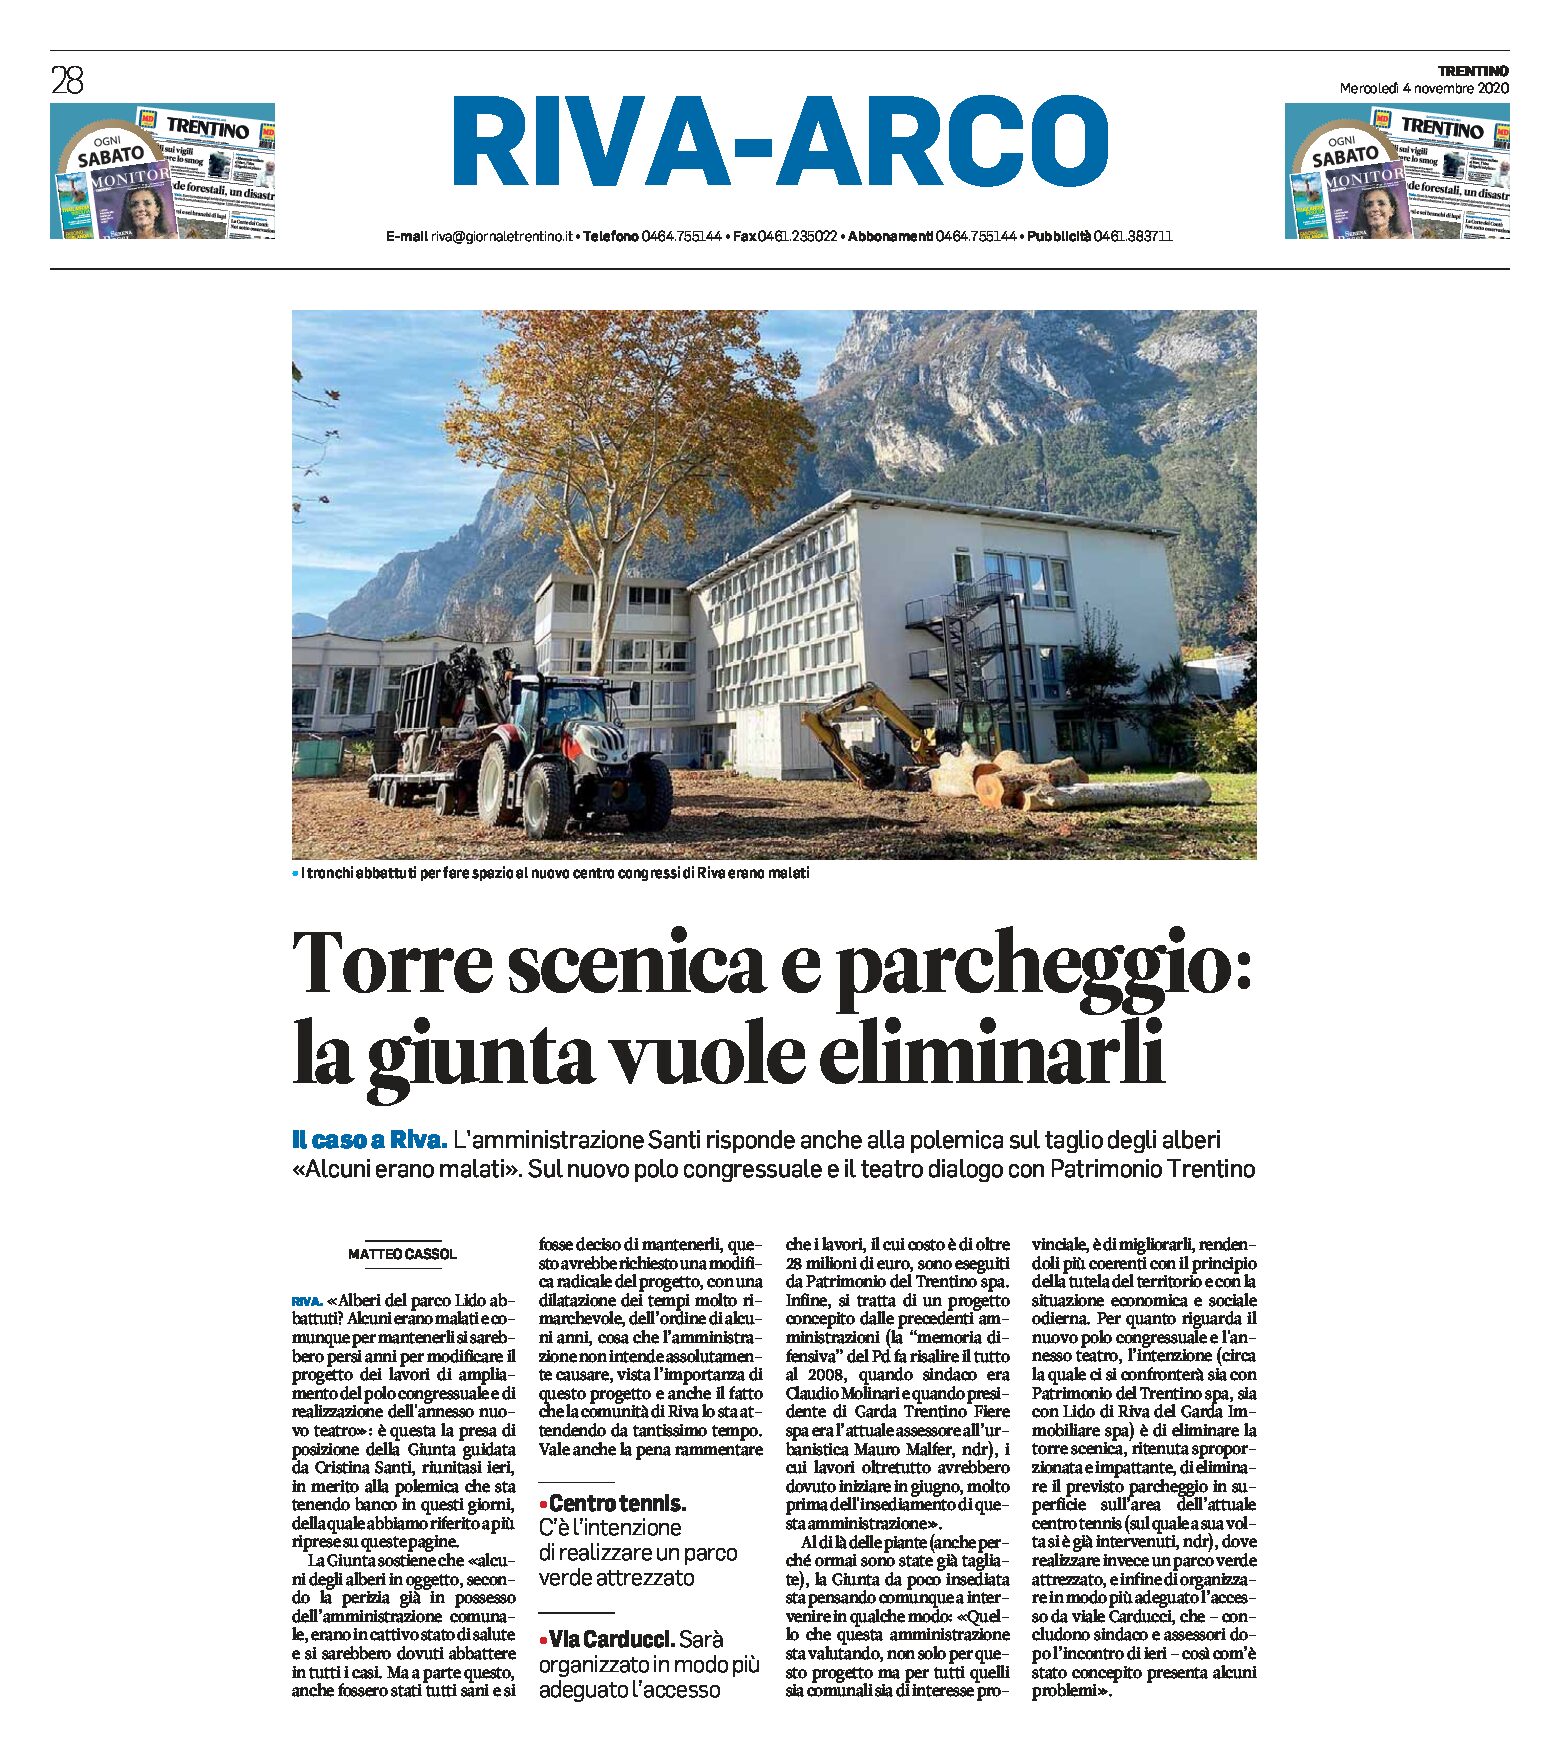 Riva: l’amministrazione Santi risponde su taglio degli alberi, torre scenica e parcheggio